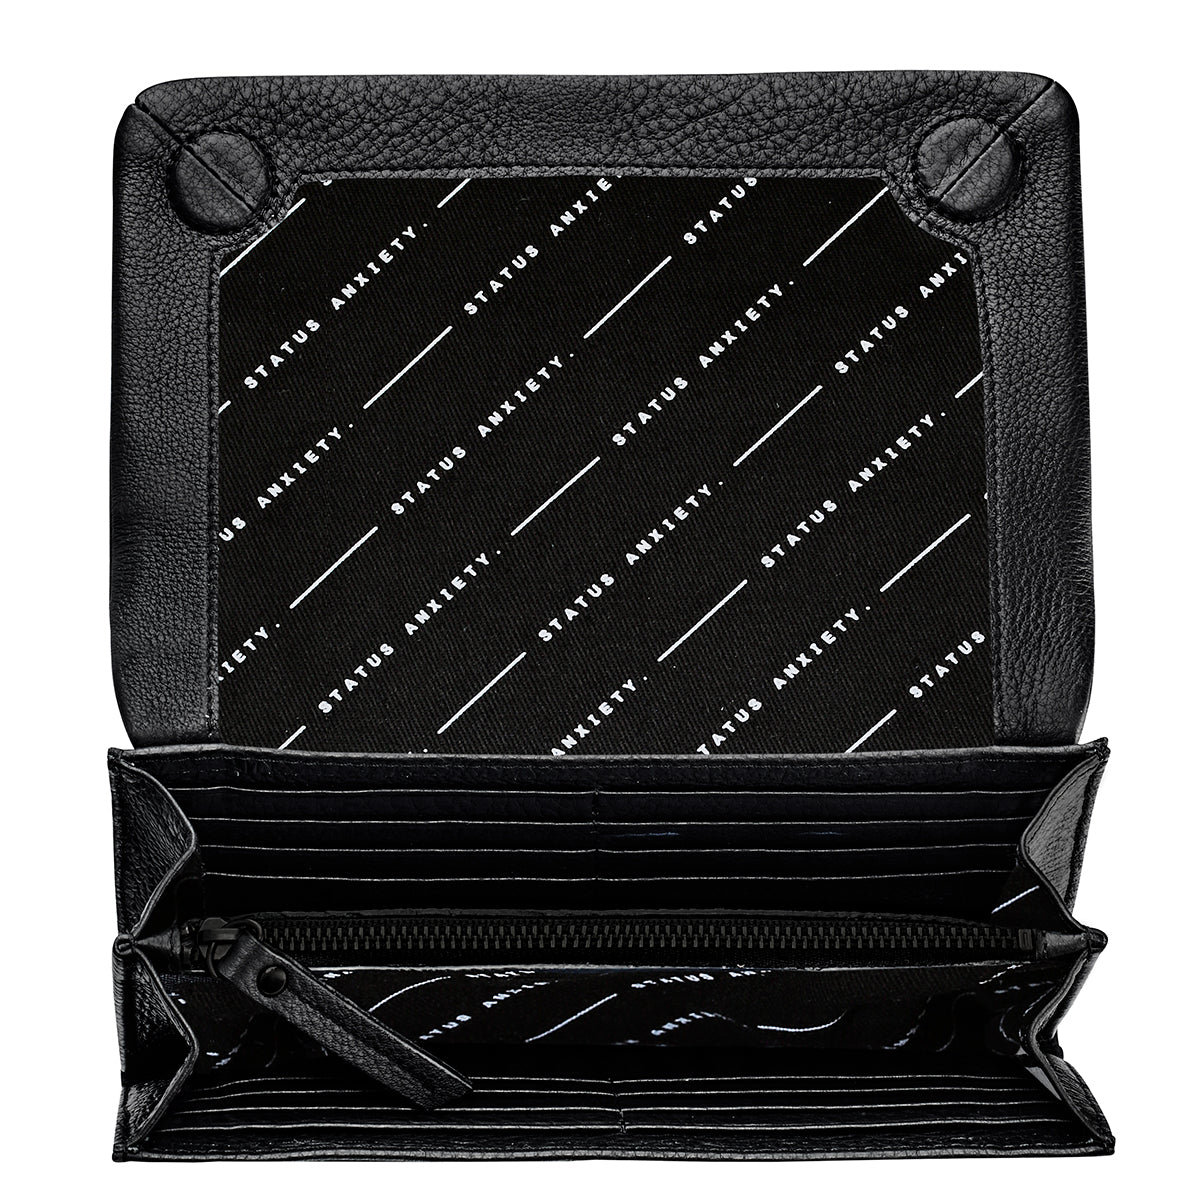 Remnant leather wallet black